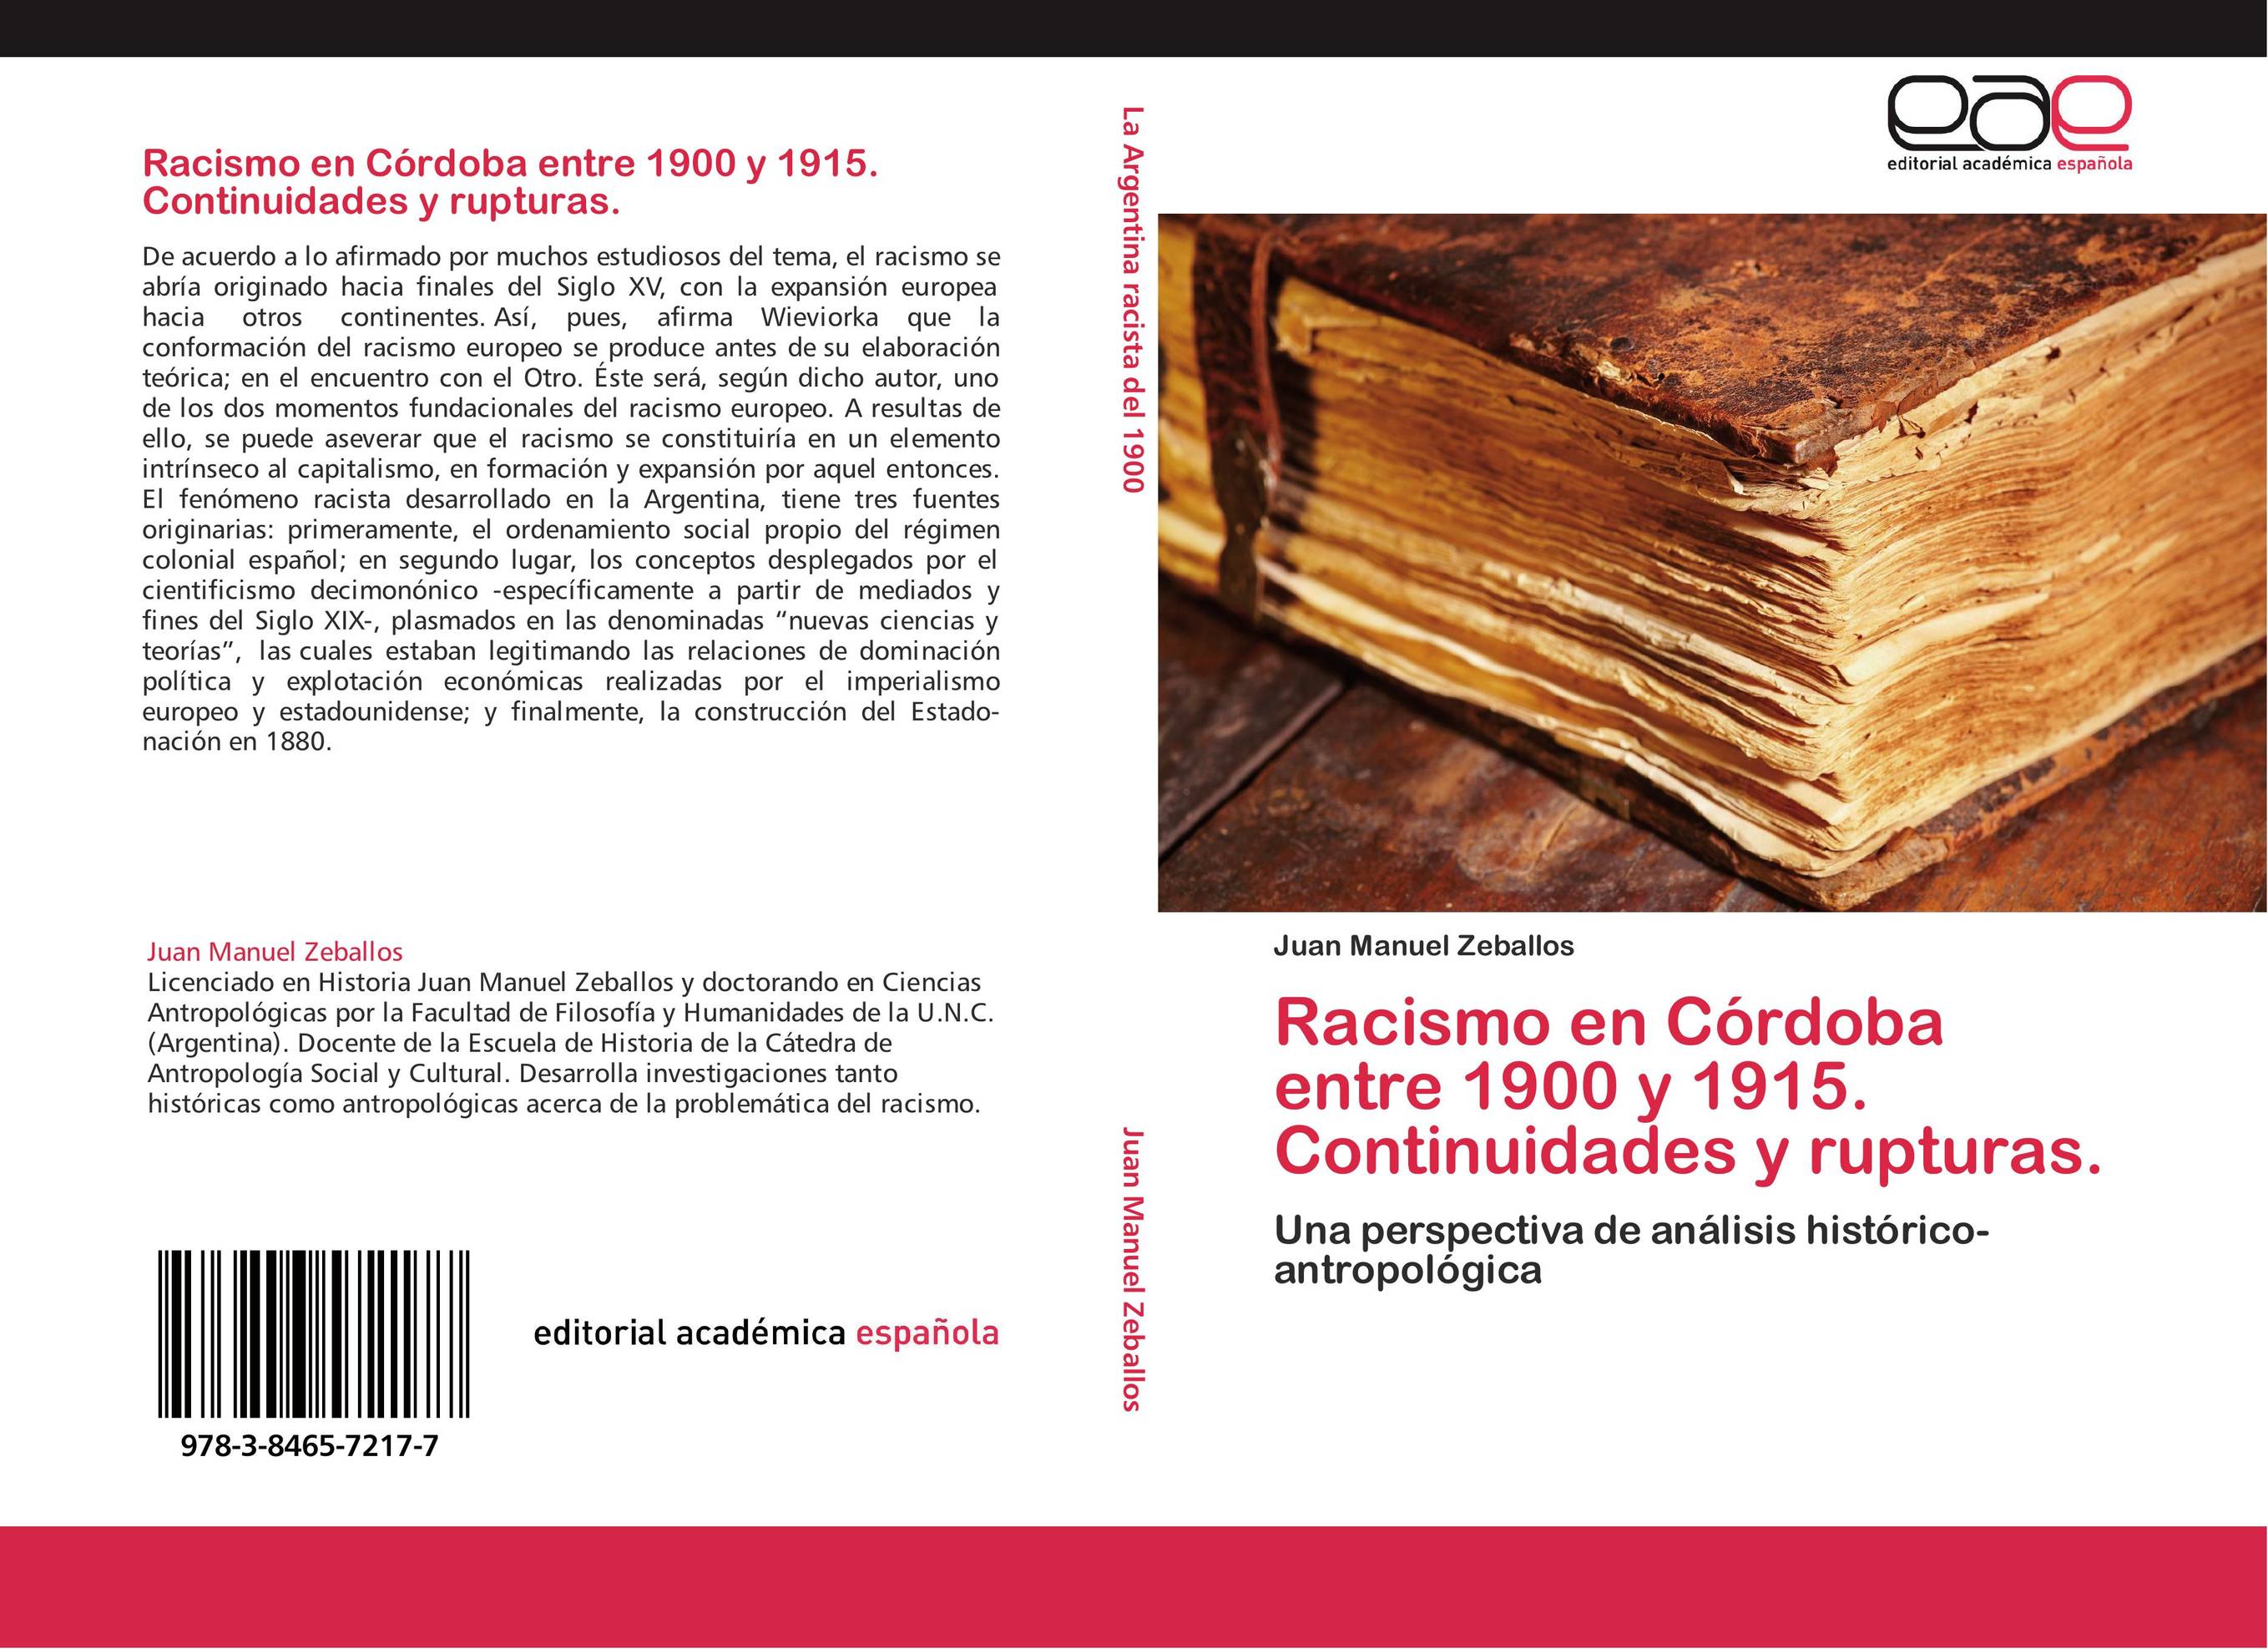 Racismo en Córdoba entre 1900 y 1915. Continuidades y rupturas.